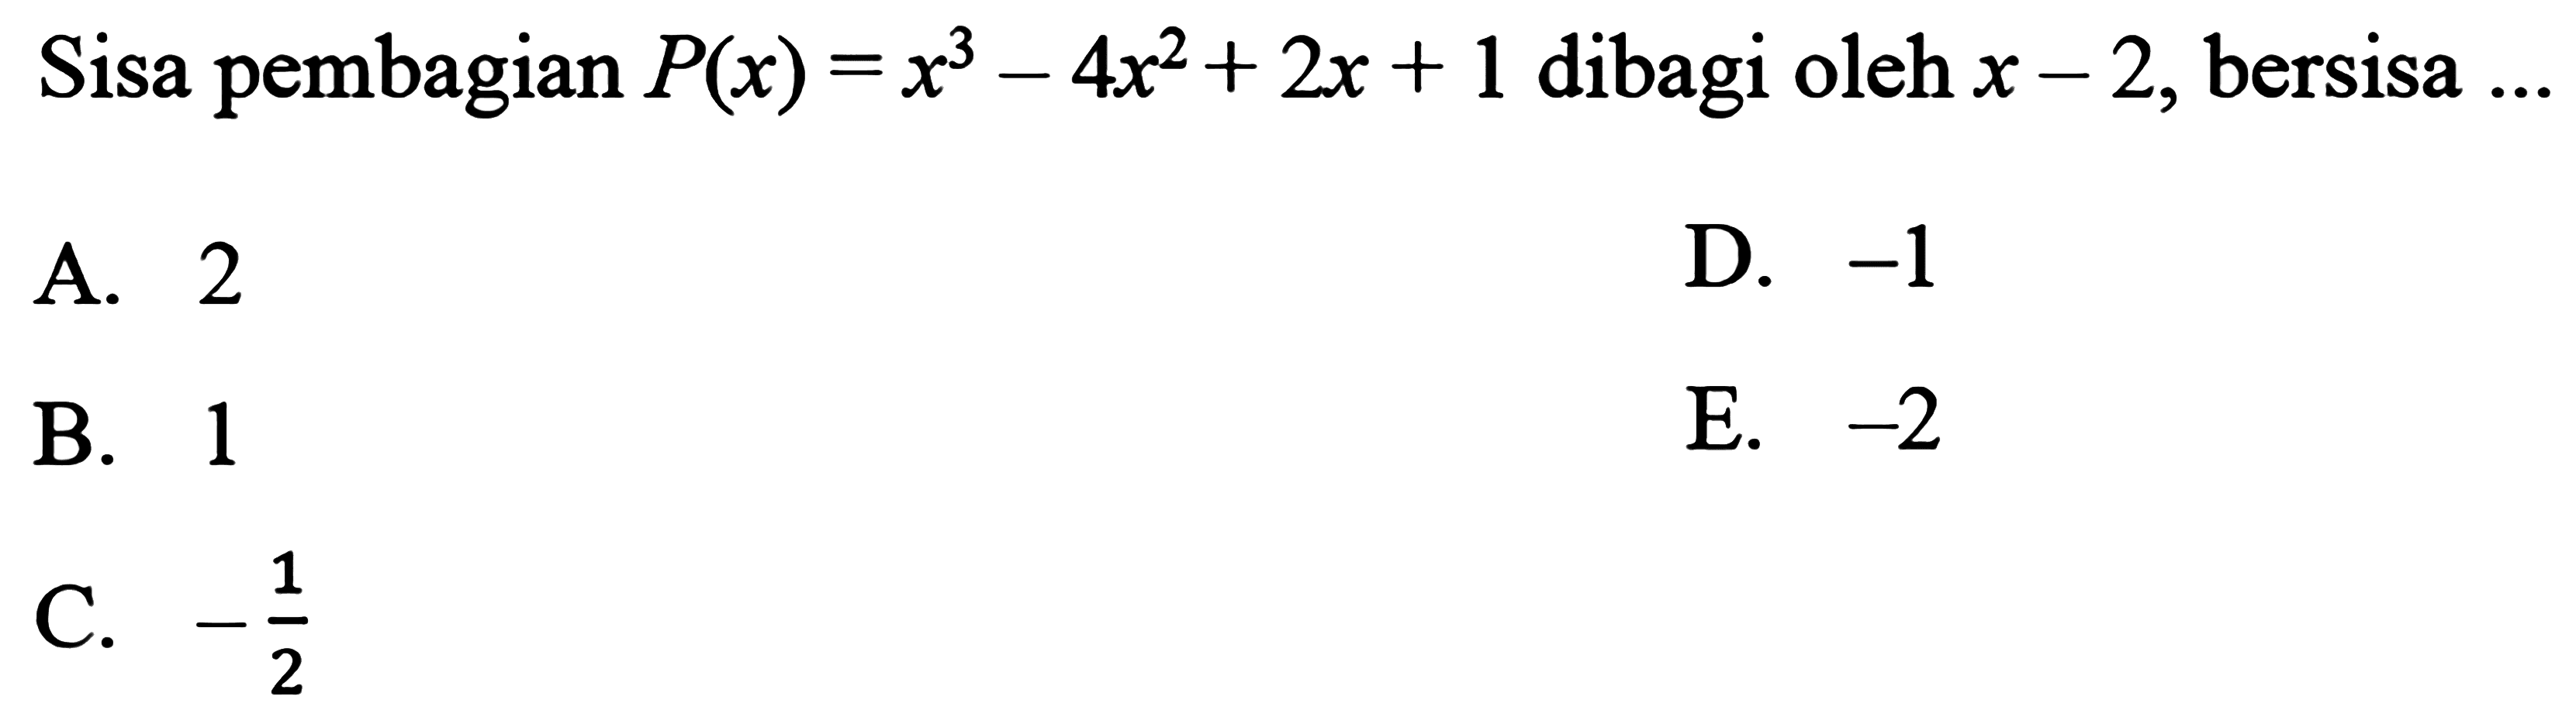 Sisa pembagian P(x)=x^3-4x^2+2x+1 dibagi oleh x-2, bersisa ...